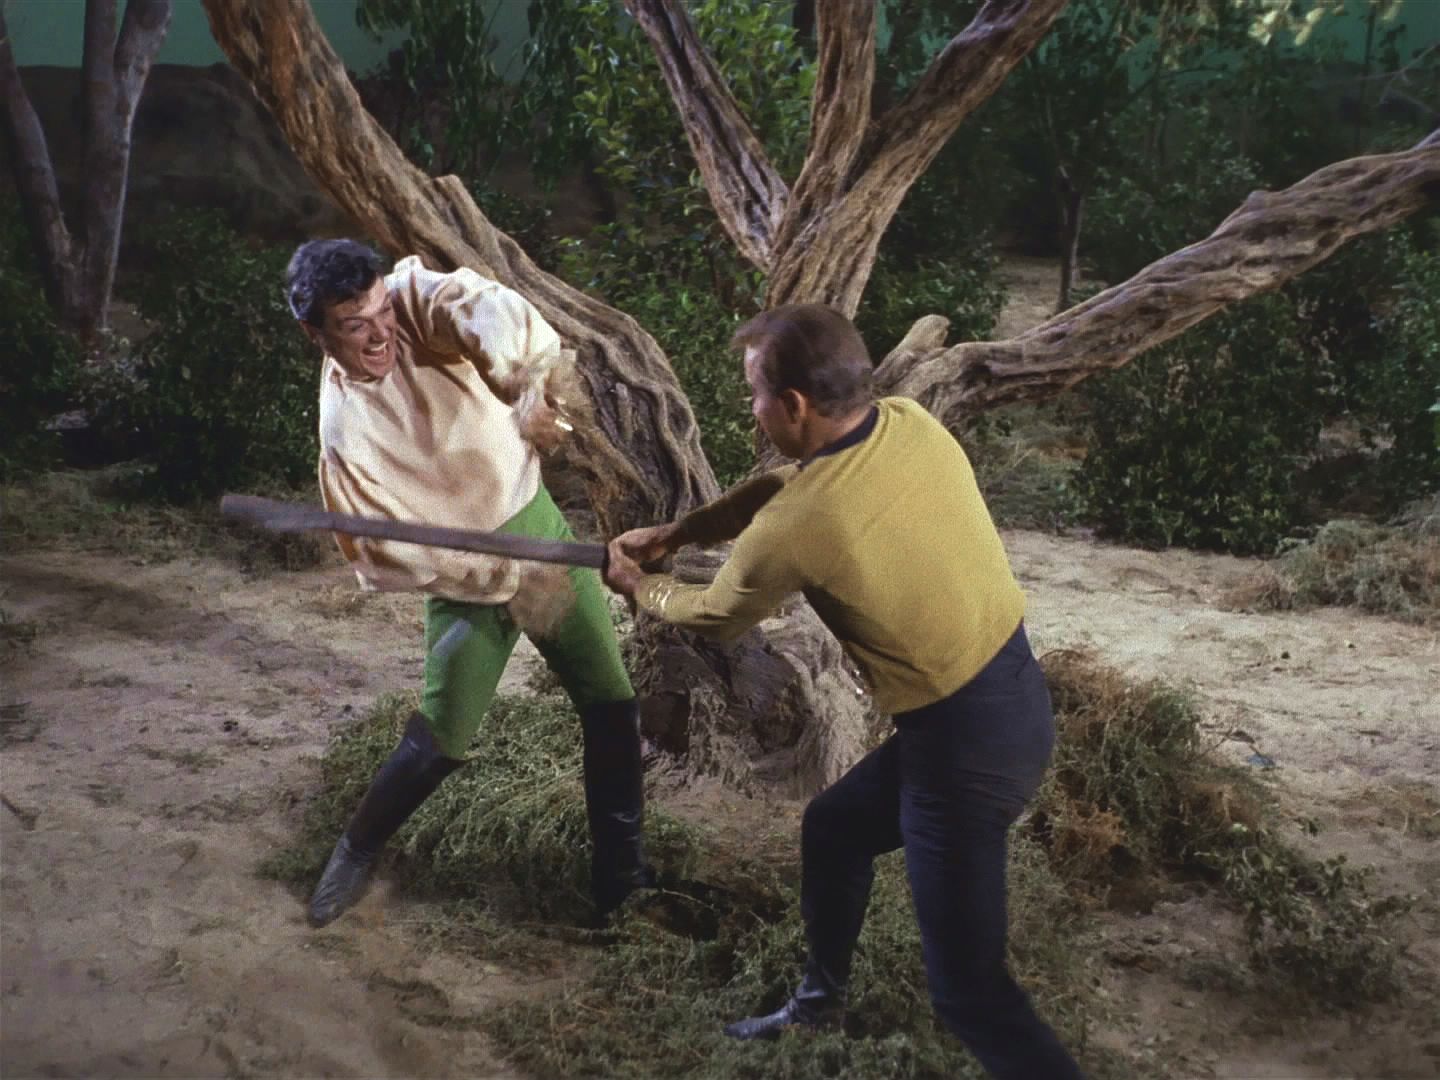 Trelane se nevzdává. Znovu si přenesl Kirka, soudí ho a trestem má být oprátka. Kirk pochopil, že Trelanovi jde hlavně o zábavu, a přesvědčil ho, aby spolu bojovali o uvolnění Enterprise.